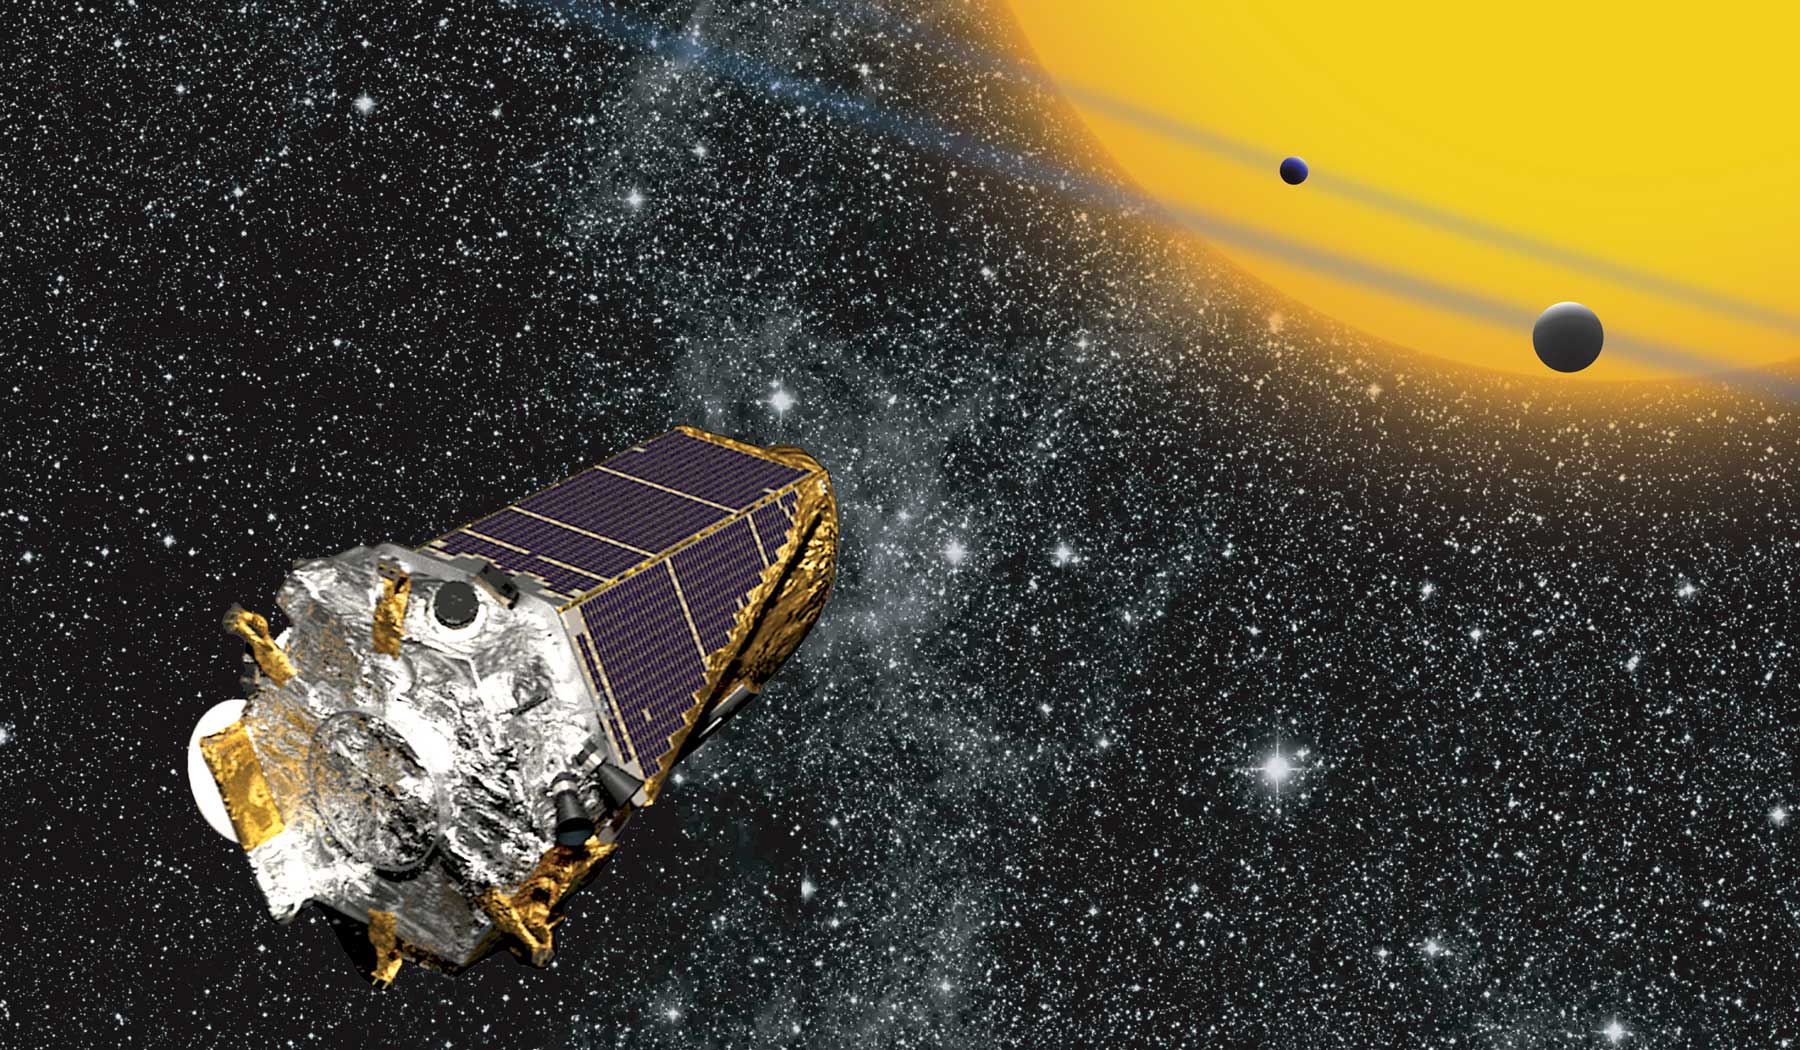 Cette vue d'artiste montre le satellite Kepler, de la Nasa, en train de chasser des exoplanètes par la méthode du transit planétaire. Cet instrument spatial peut aussi étudier les variations de luminosité des étoiles causées par les ondes qui les parcourent : c'est la sismologie stellaire, ou astérosismologie. © Nasa, W Stenzel